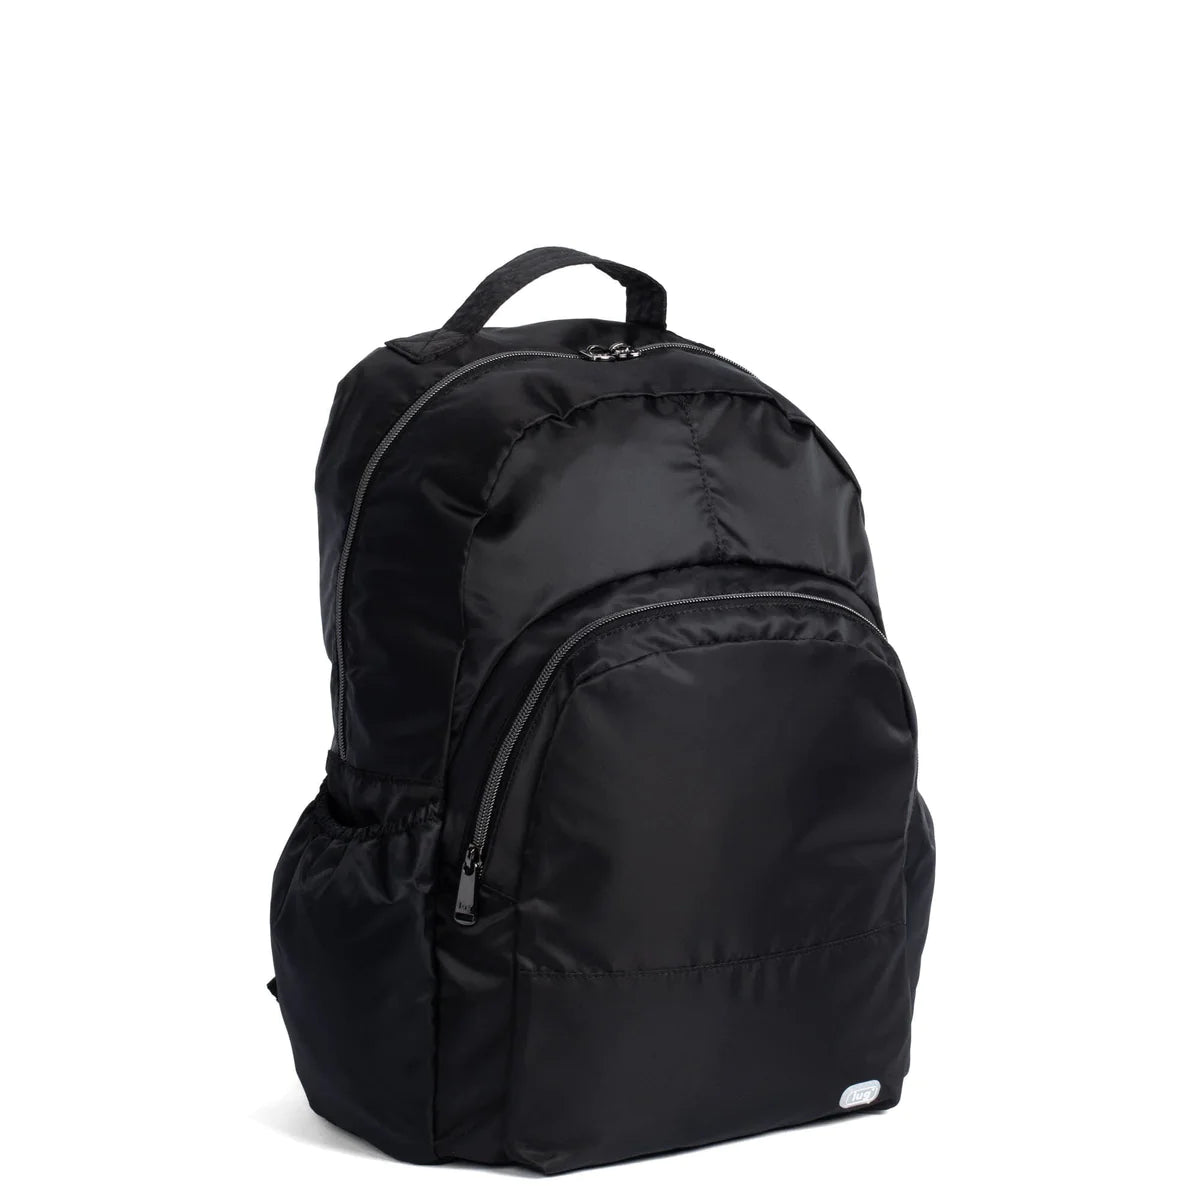 LUG Echo 2 Packable Backpack in Black